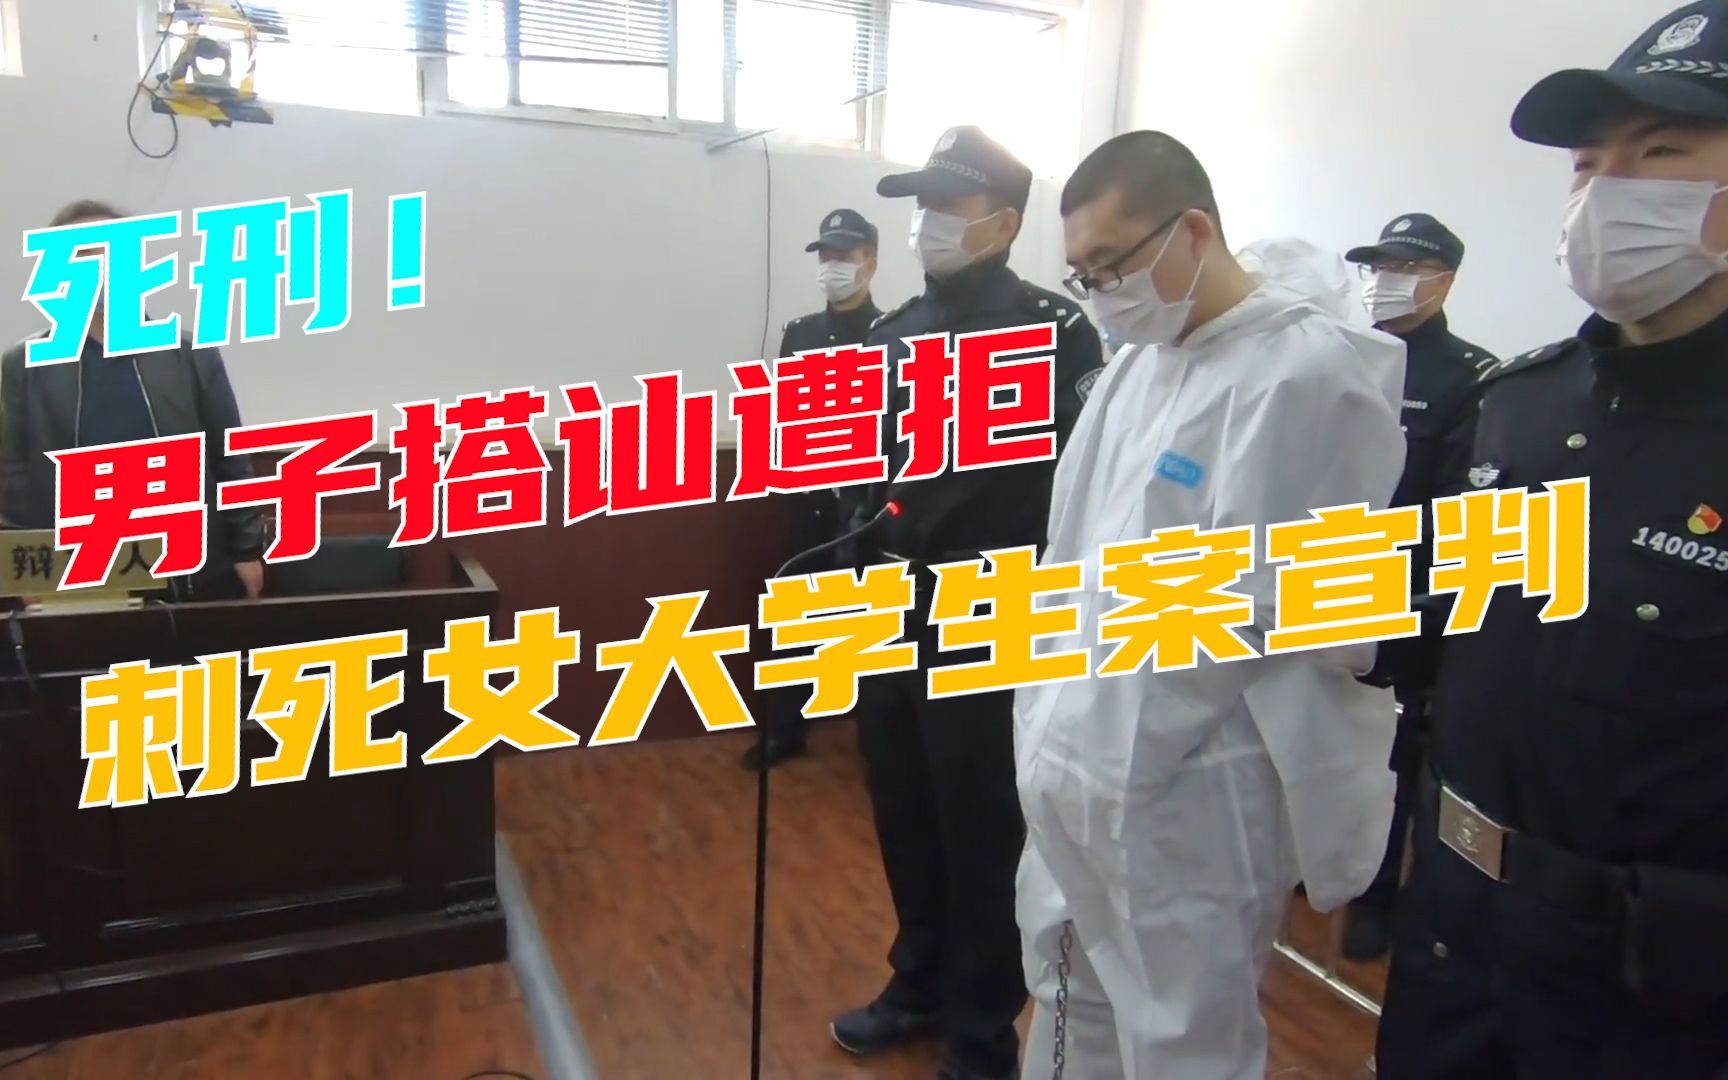 动画 南京女大学生被害案一审宣判 3D还原案件始末|女大学生|南京市|死刑_新浪新闻